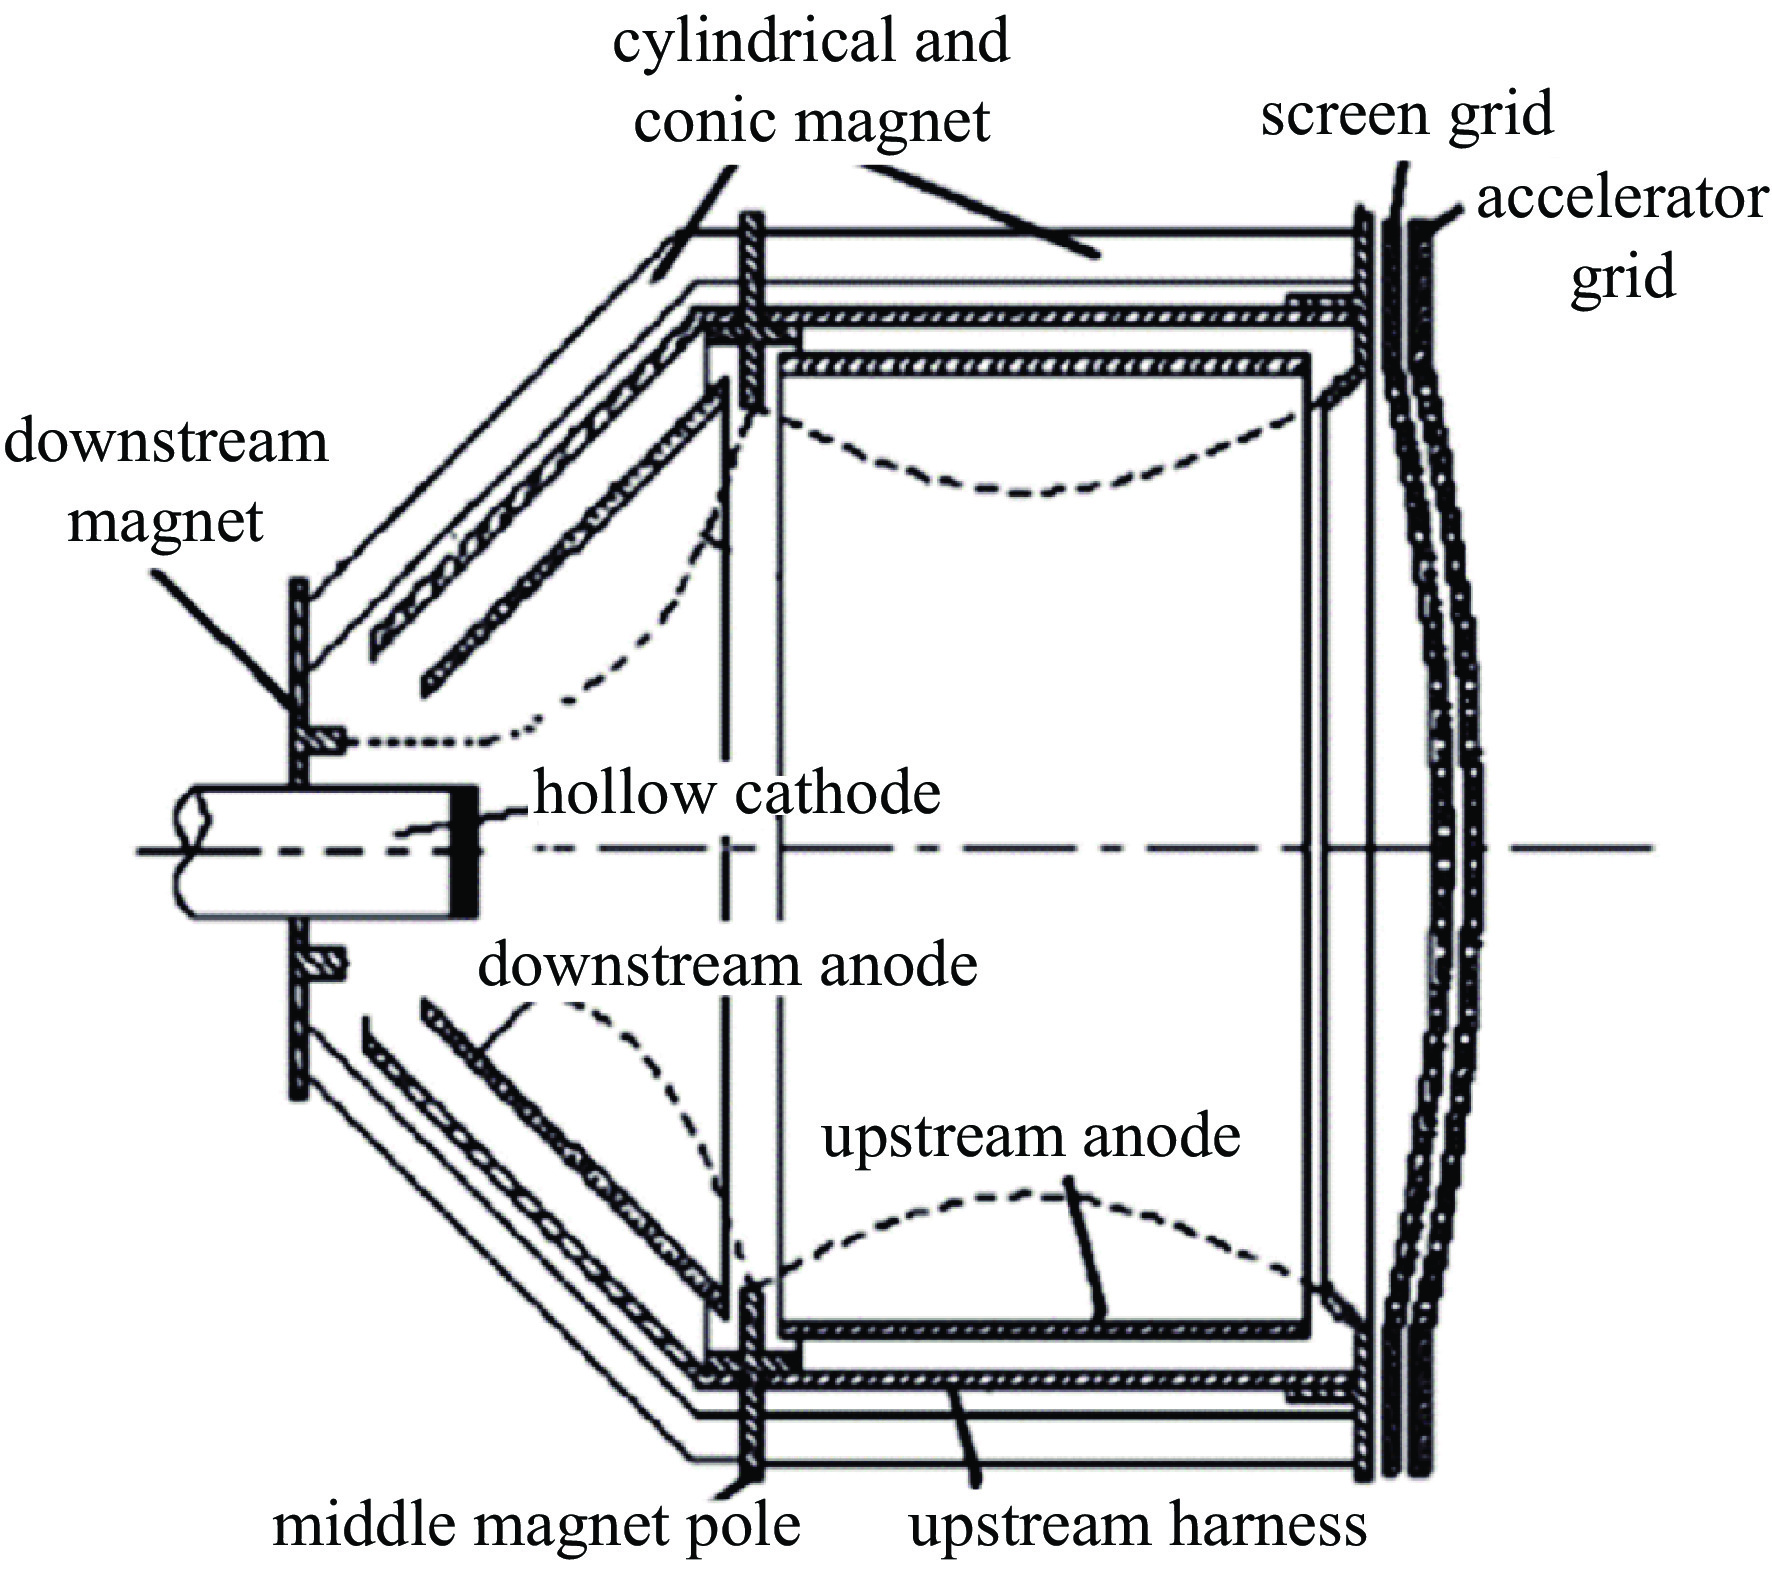 Structure of 20 cm diameter ion thruster